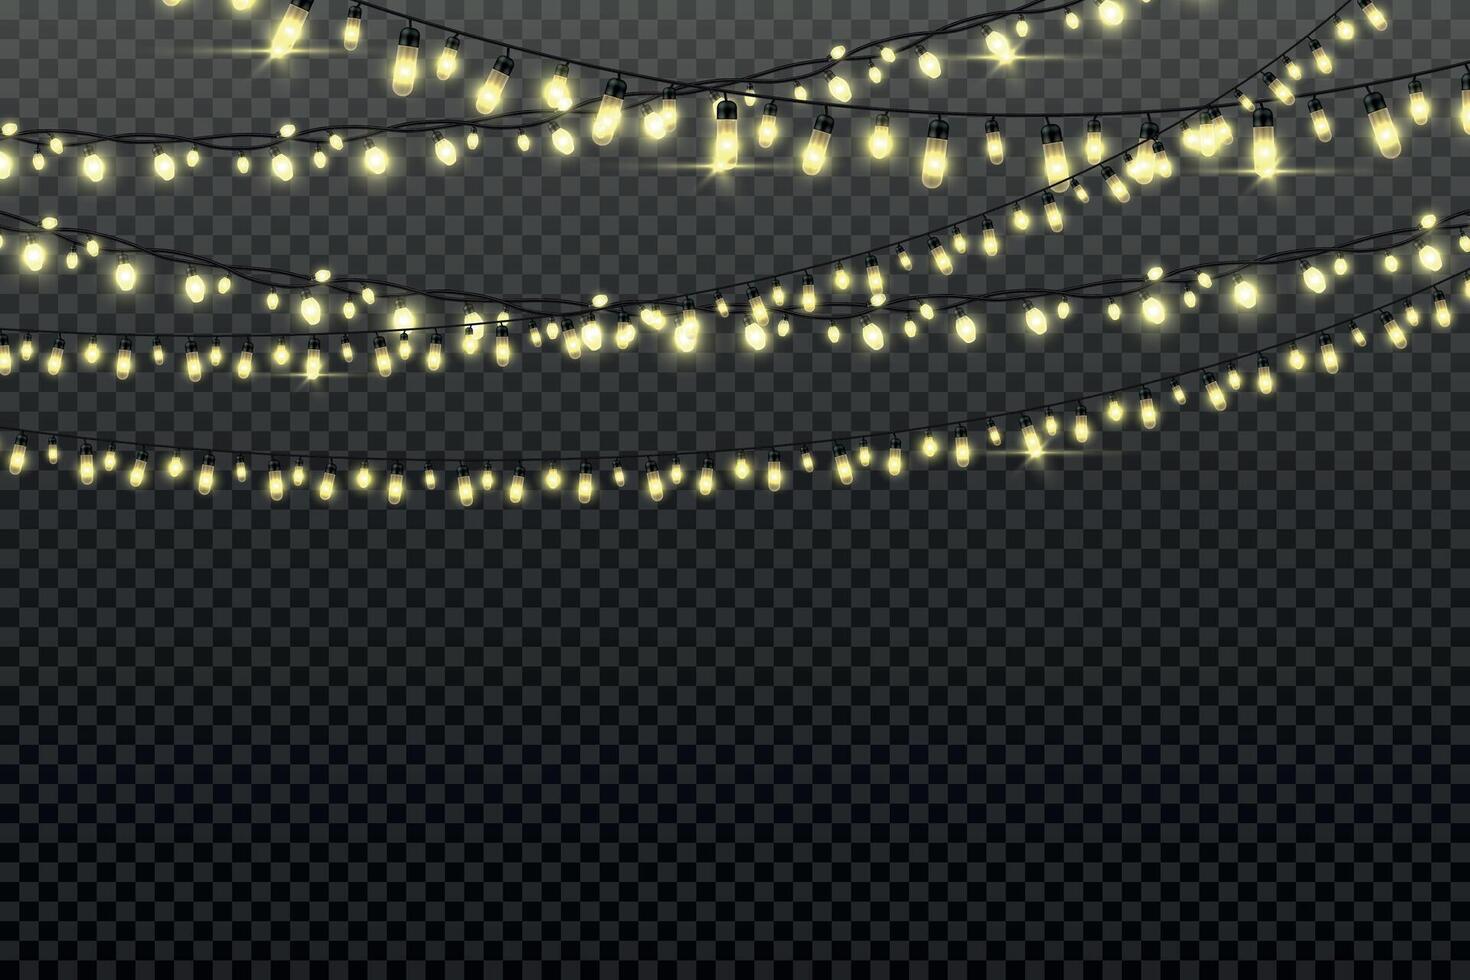 Weihnachten Licht Girlanden mit Glühbirnen auf Zeichenfolge zum Party Hintergrund. Weihnachten Urlaub Dekor, glühend glänzend Fee Beleuchtung. Vektor festlich Girlande